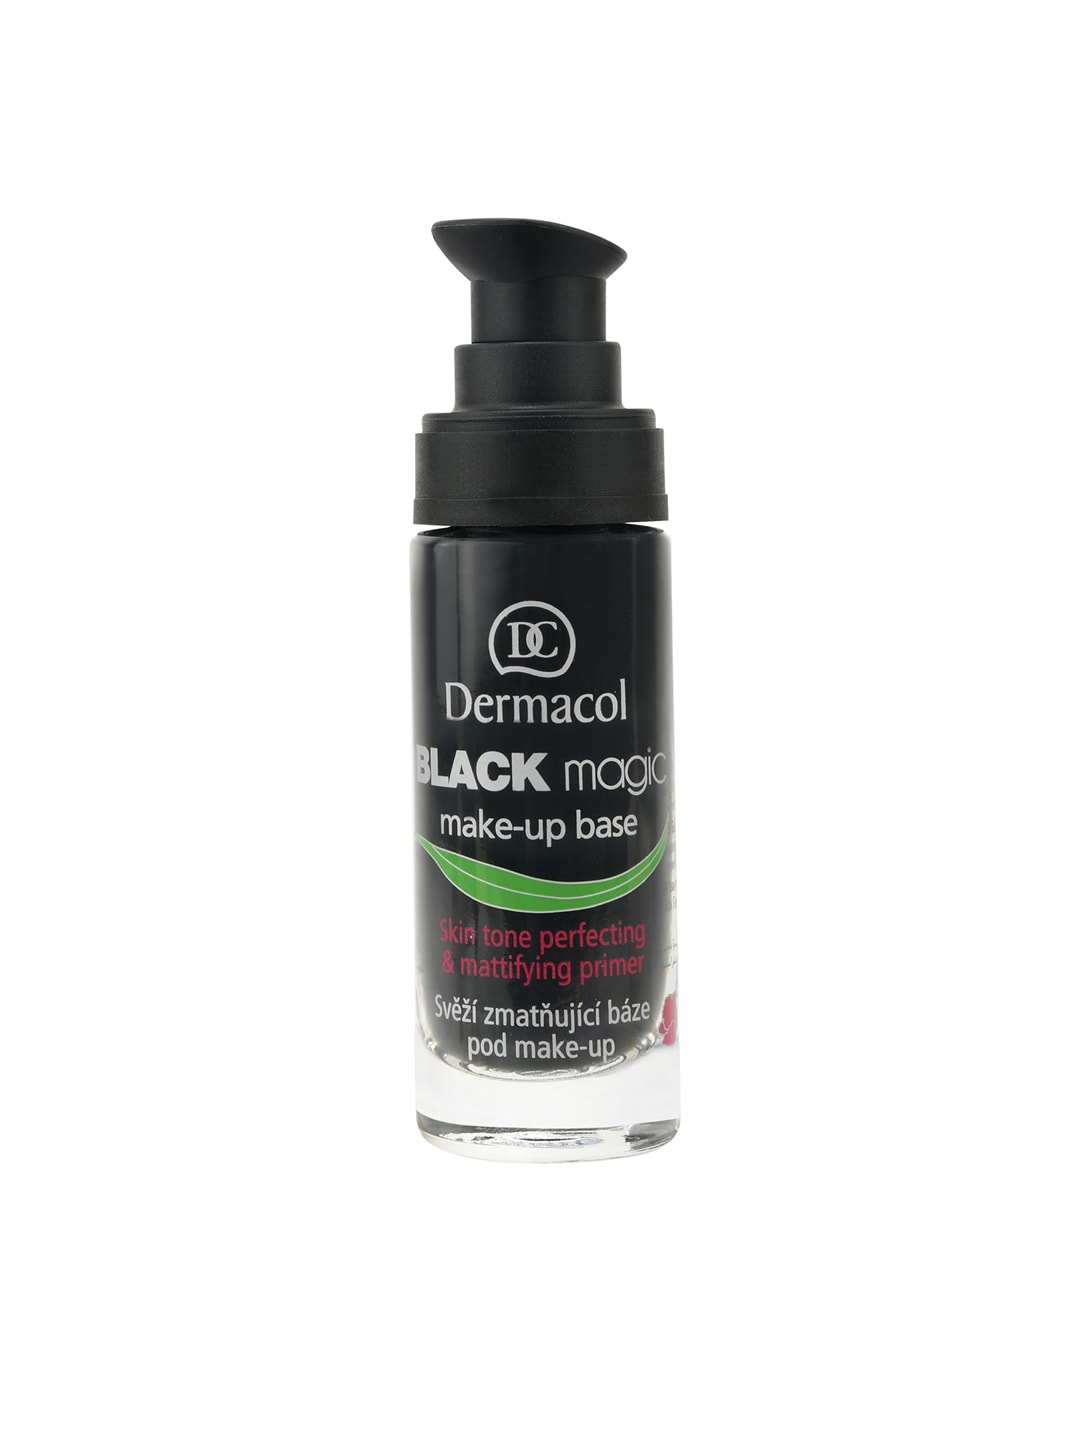 Dermacol 1420 Black Magic Make-Up Base Primer 20 ml Price in India